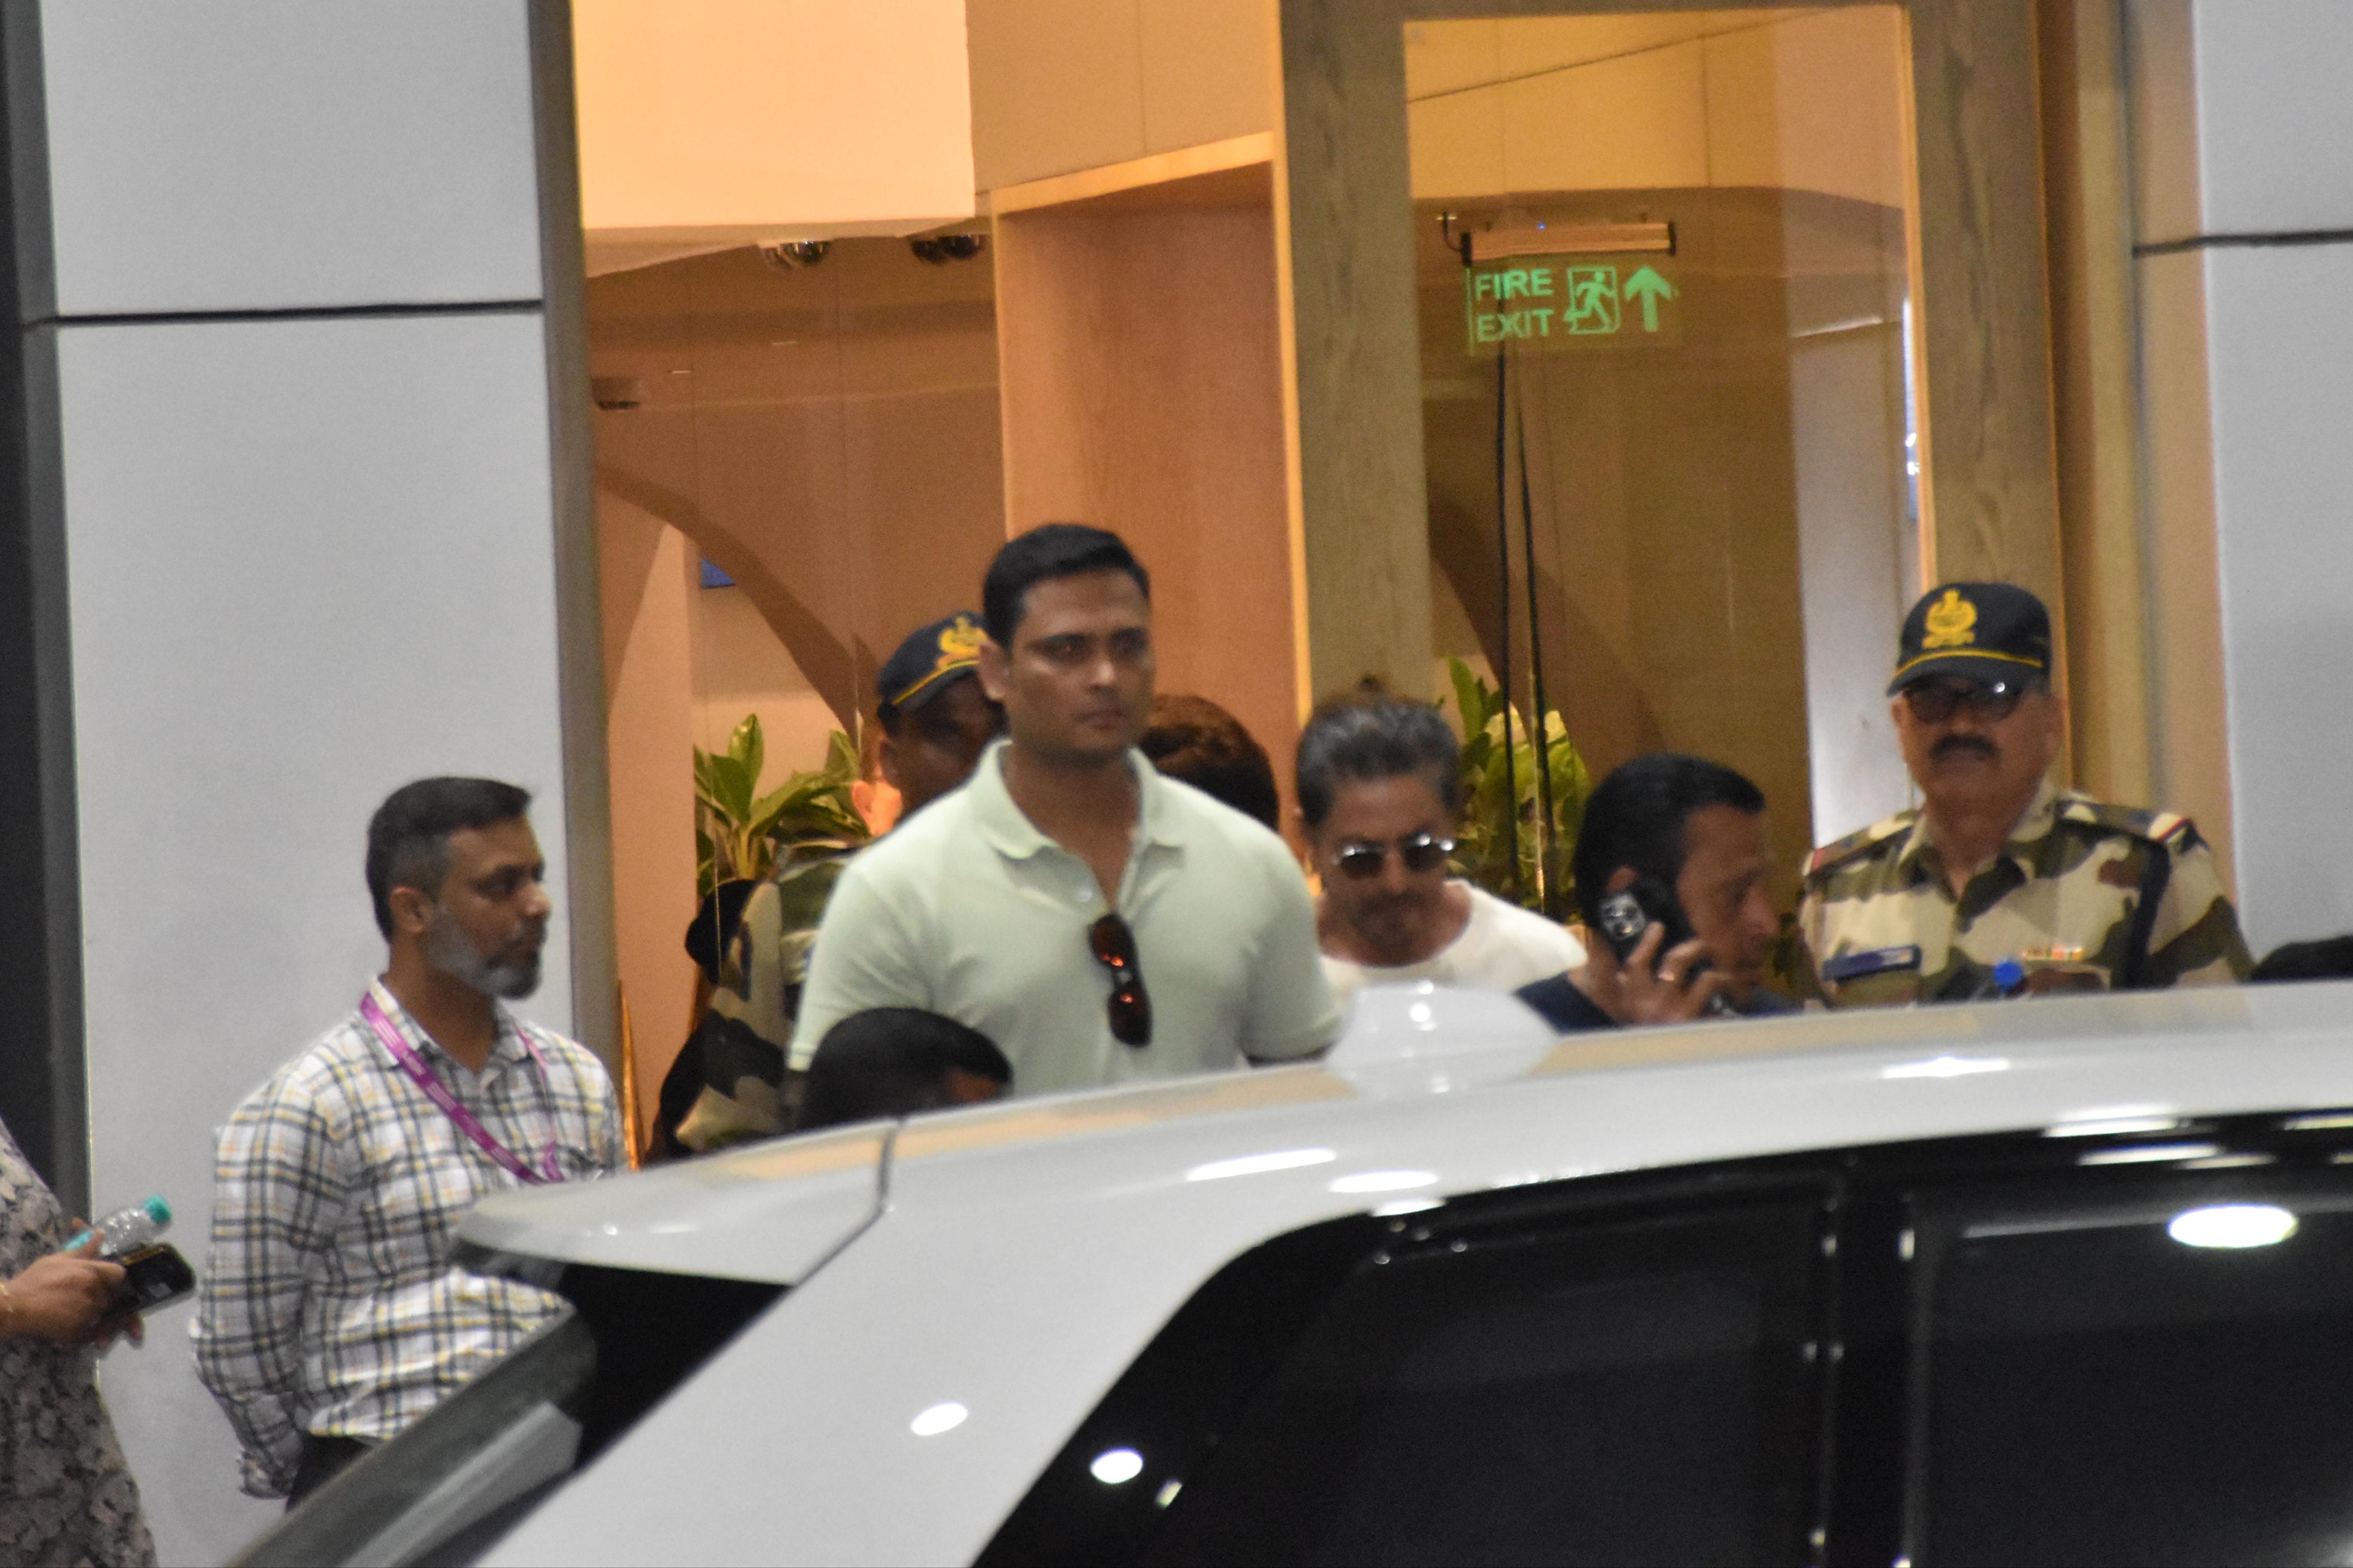 Shah Rukh Khan was clicked at the Kalina airport in Mumbai